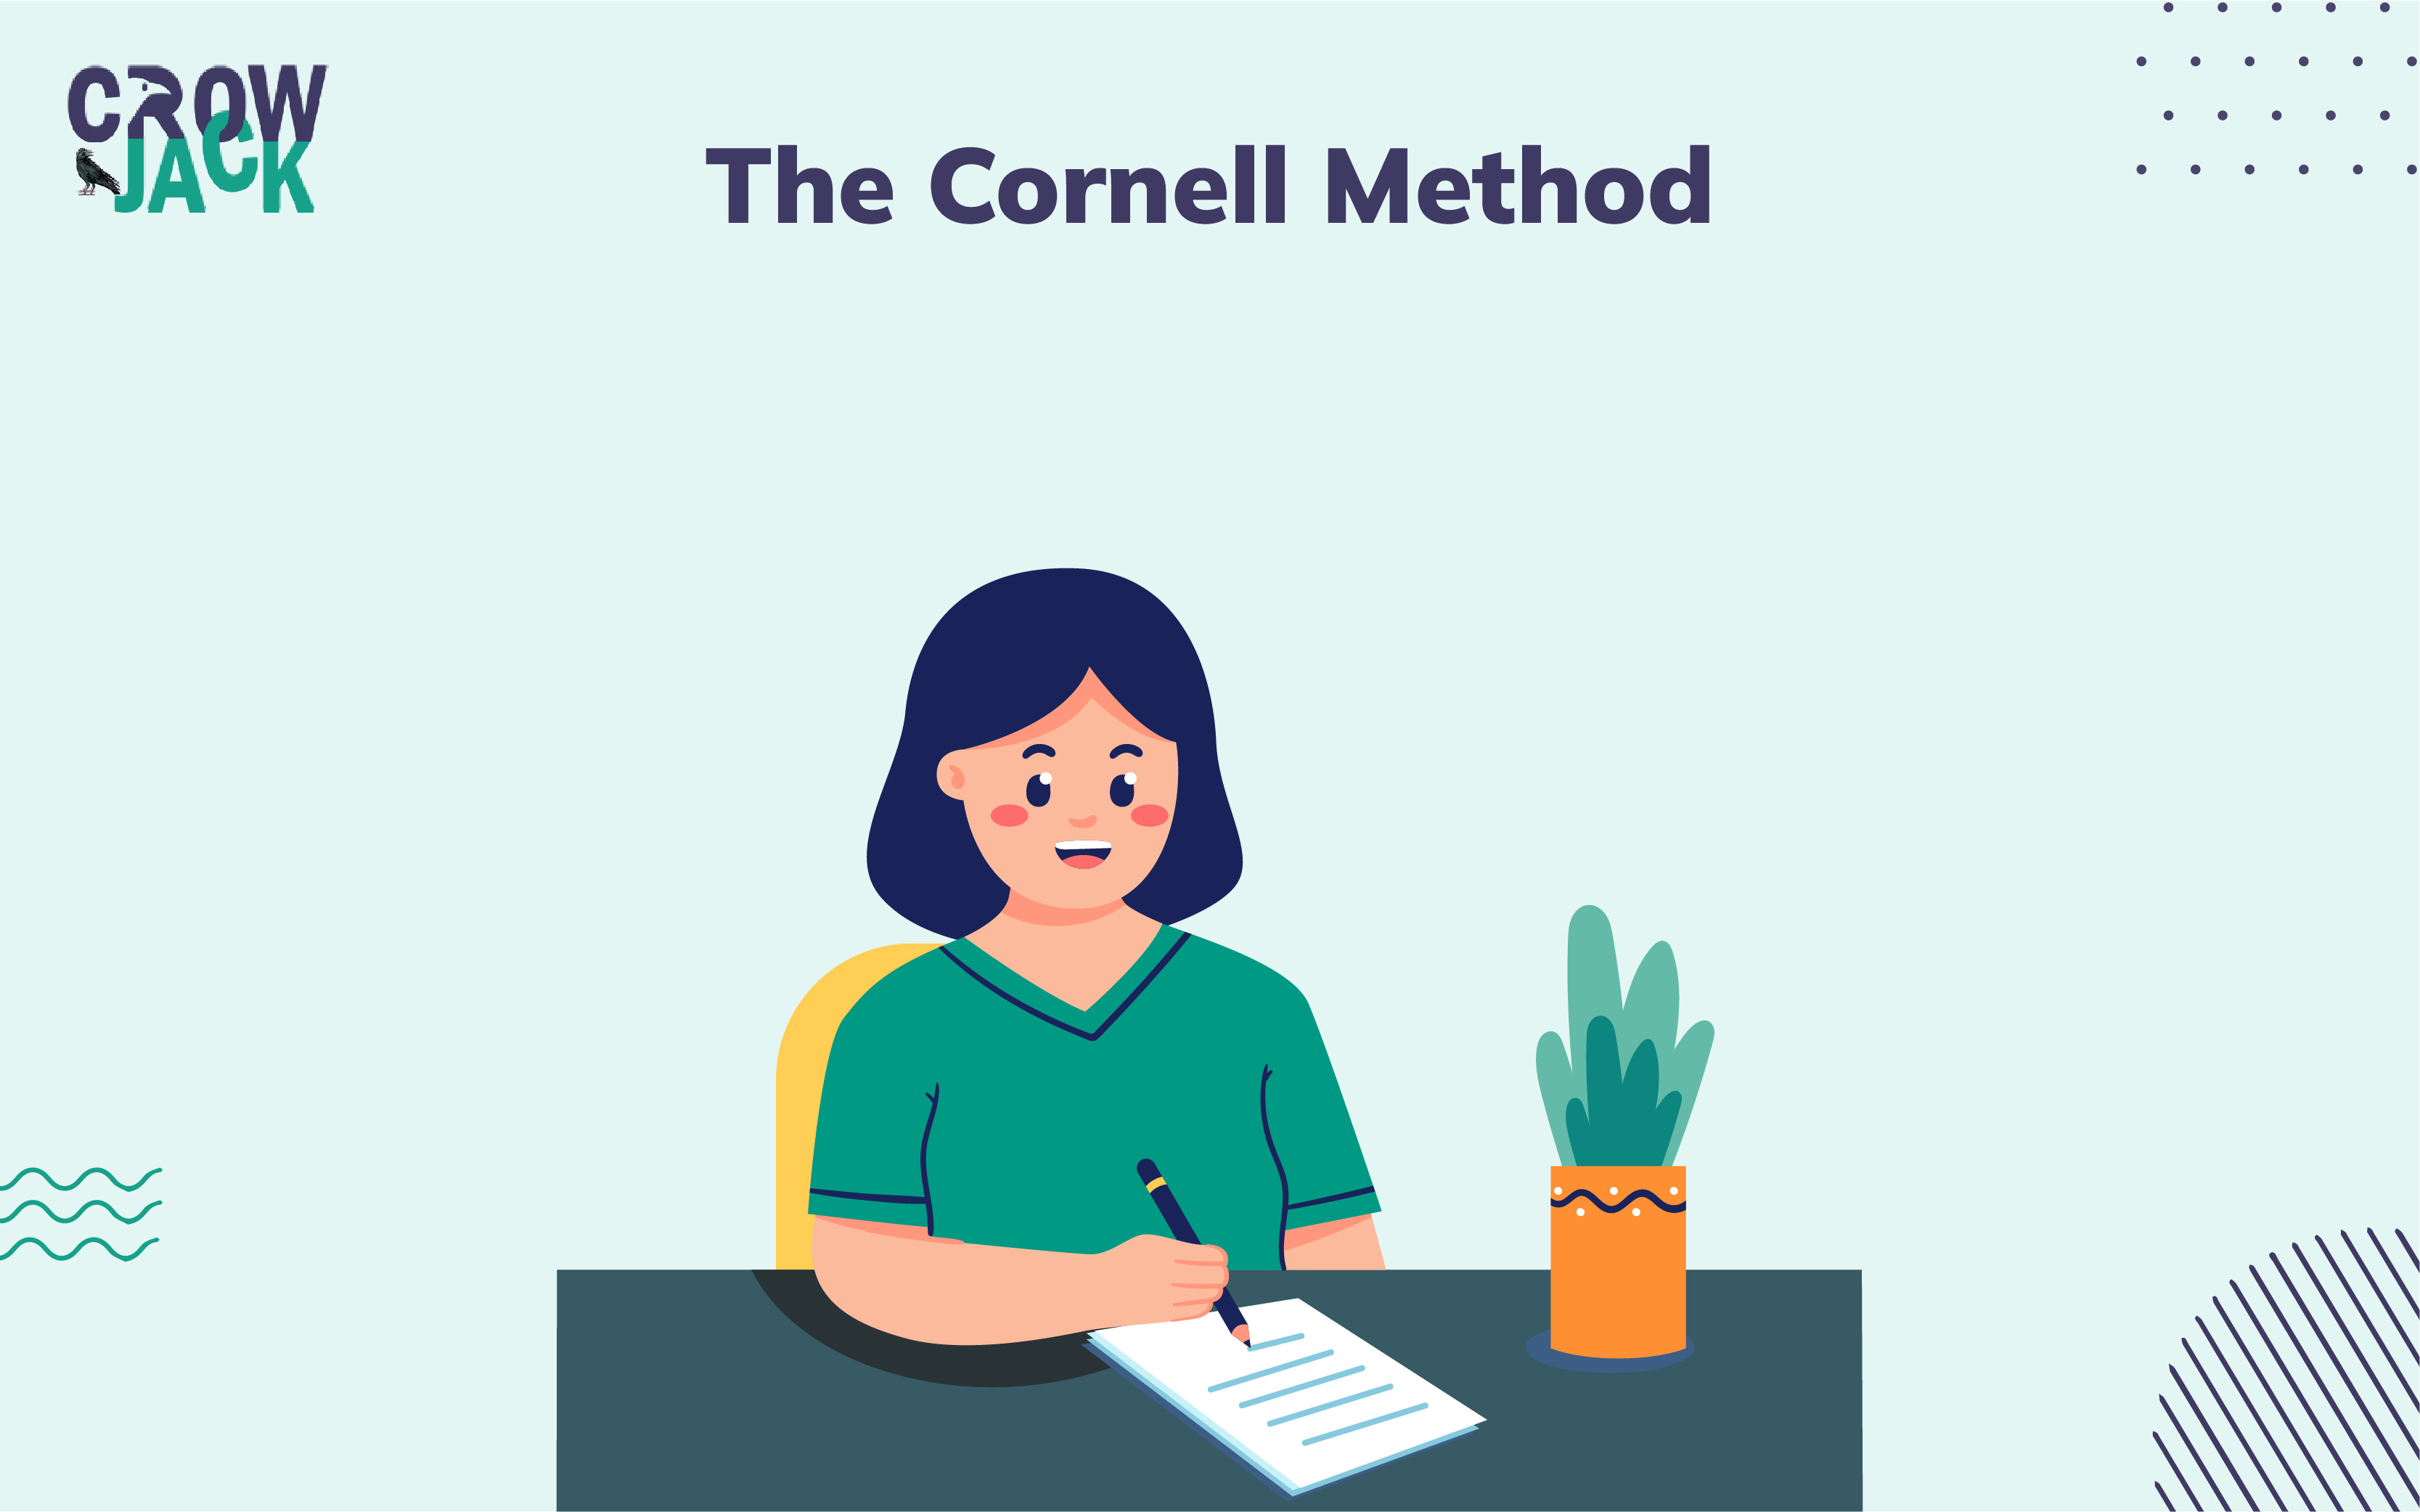 The Cornell Method